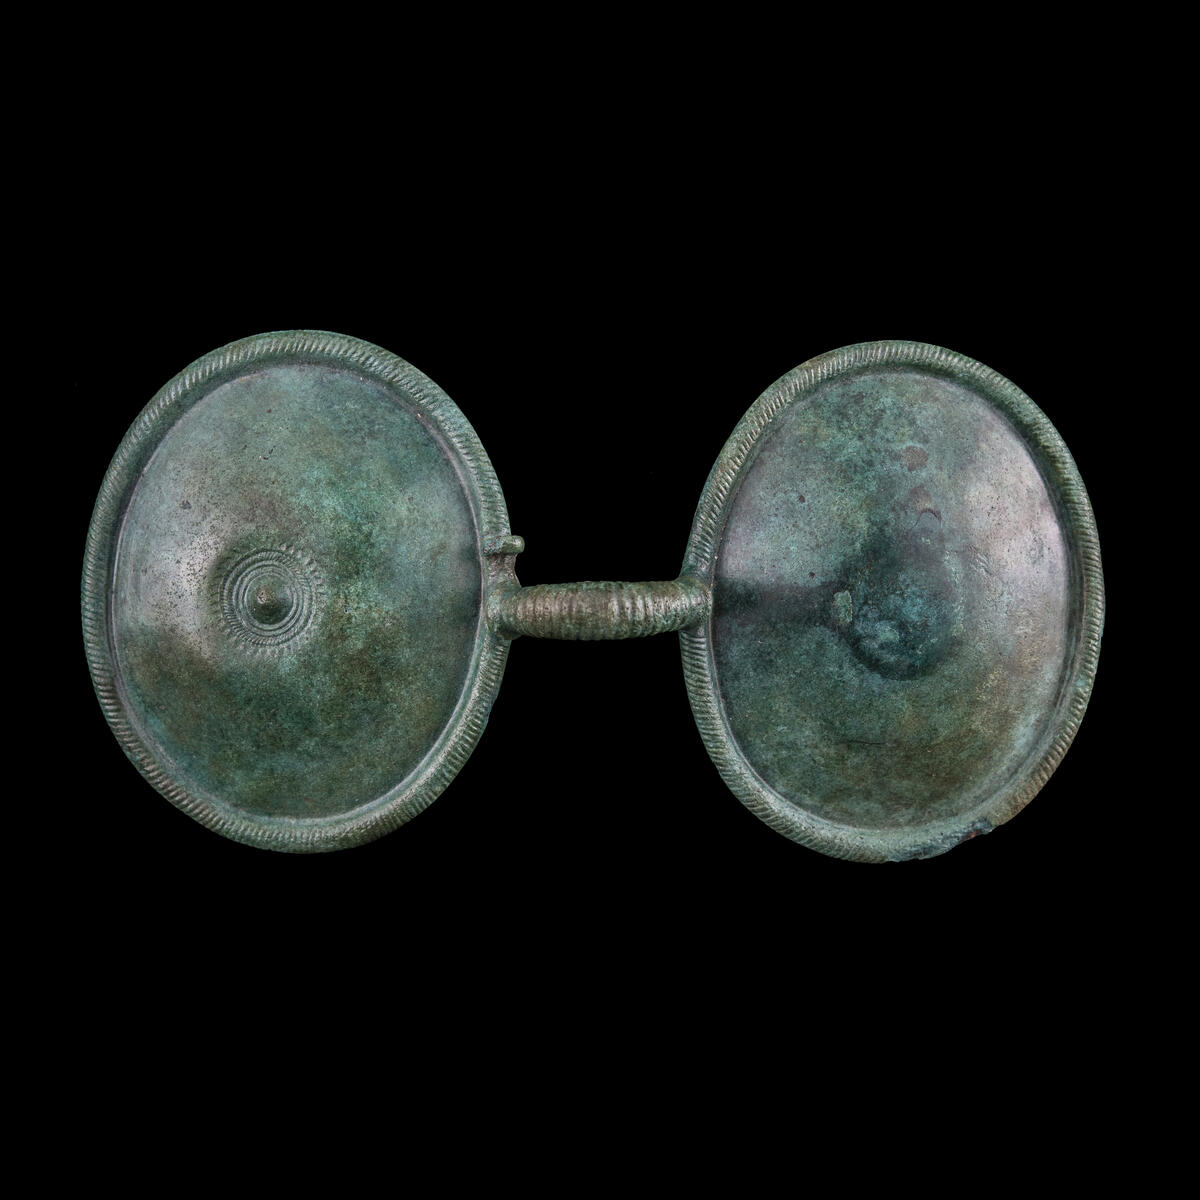 Glasögonformigt spänne, från bronsåldern, omkr. 1000 f.Kr., av brons. L. 14 cm, skivorna äro ovala. Diam. 7 x 6 cm, lätt kupiga, längs kanten löper spiralläggningen som en bård. Bygeln mellan skivorna likaså refflad. Ena skivan har en uppstående mittknopp och runt denna koncentriska cirklar och en uddkant ytterst. Andra skivans mitt pryds av nålens bricka, ornerad med punkter och streck. Nålen avbruten. L. 4,9 cm. Under bygeln en treflikig förstärkning, vid fästet på skivorna. Nålens platta oval, diam. 1,7 x 2 cm. Se tidn. art. VA 2 maj 1960, 3 maj 1960. Upphittat av fru Tyra Tjernberg, 1 maj 1960, ca 150 m. S. om mangårdsbyggnaden, Sebäng 5:1. Spännet låg i skogsmark, moränkulle, alldels invid ägoväg i ett tillfälligt litet grustag, som tagits upp i höstas för att laga vägen. Spännet hade nu glidit ner och låg nu en bit ner i grustaget strax i närheten av ett ca 1,3 m. stort stenblock. Inköpt för 100:- 1960. Alfons Tjernberg, hem.äg., Sebäng, Salsåker, Nordingrå. Tel. 126. 